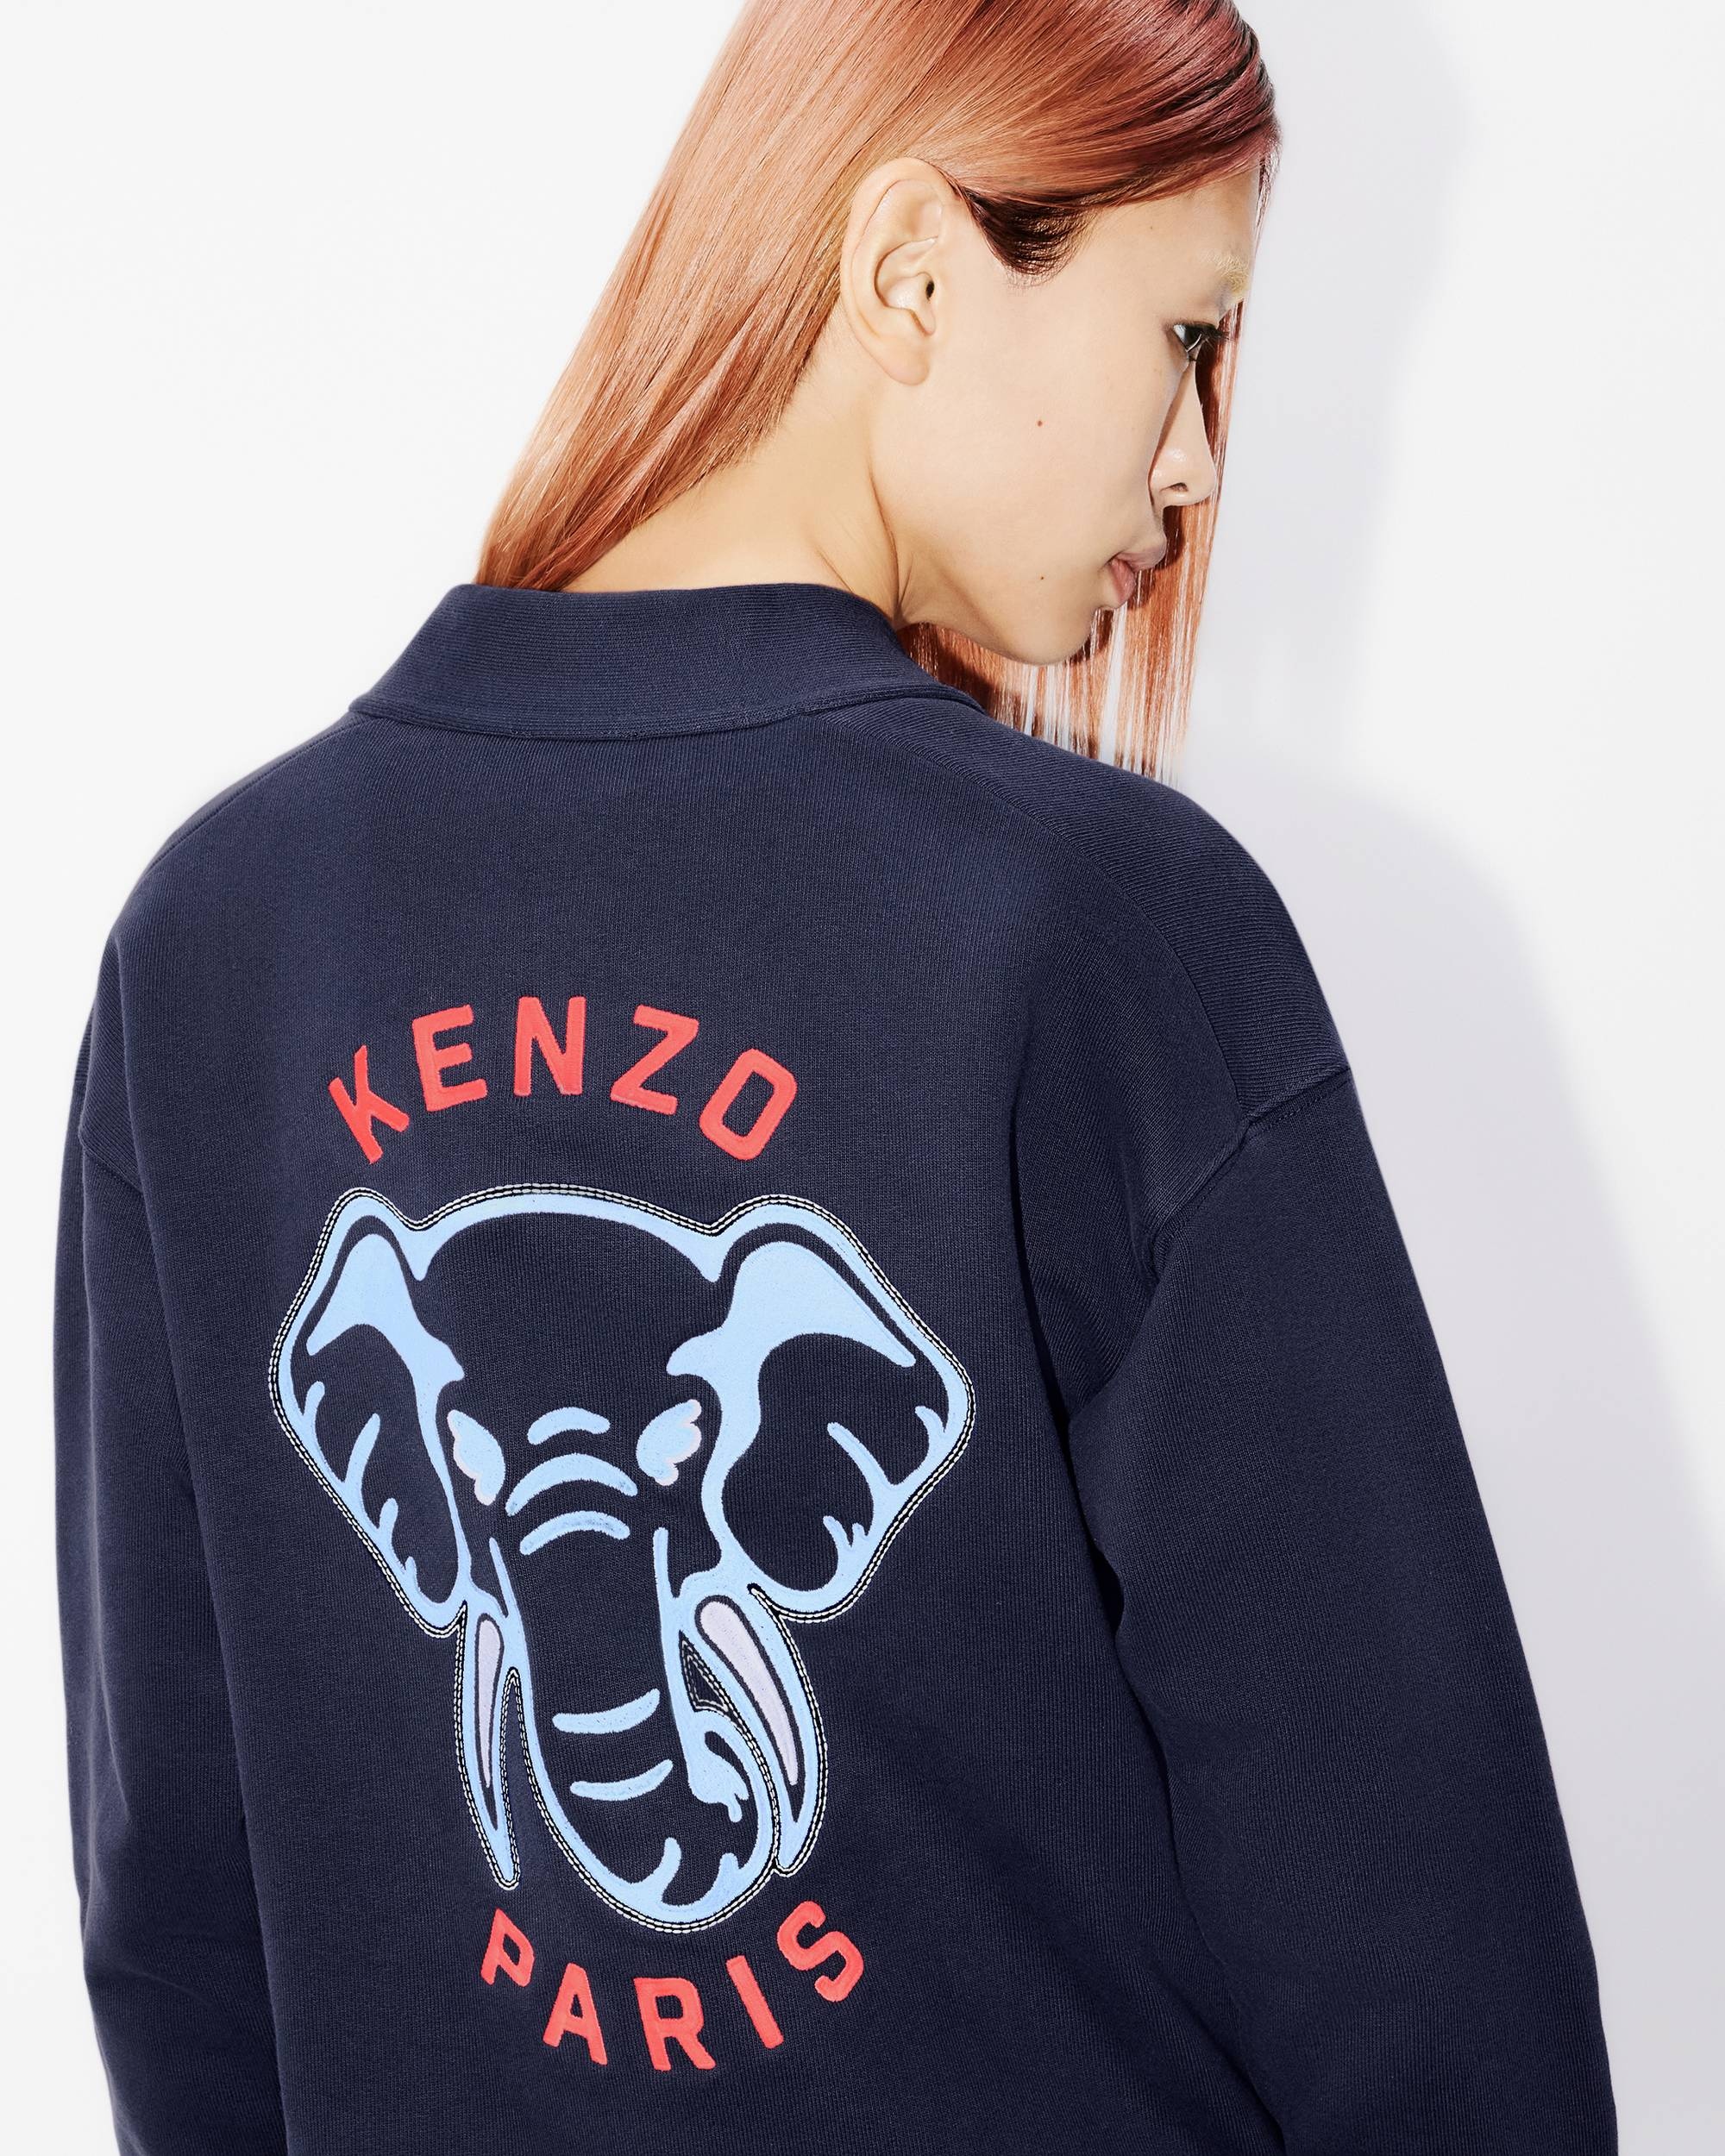 'KENZO Elephant' embroidered sweatshirt cardigan - 7